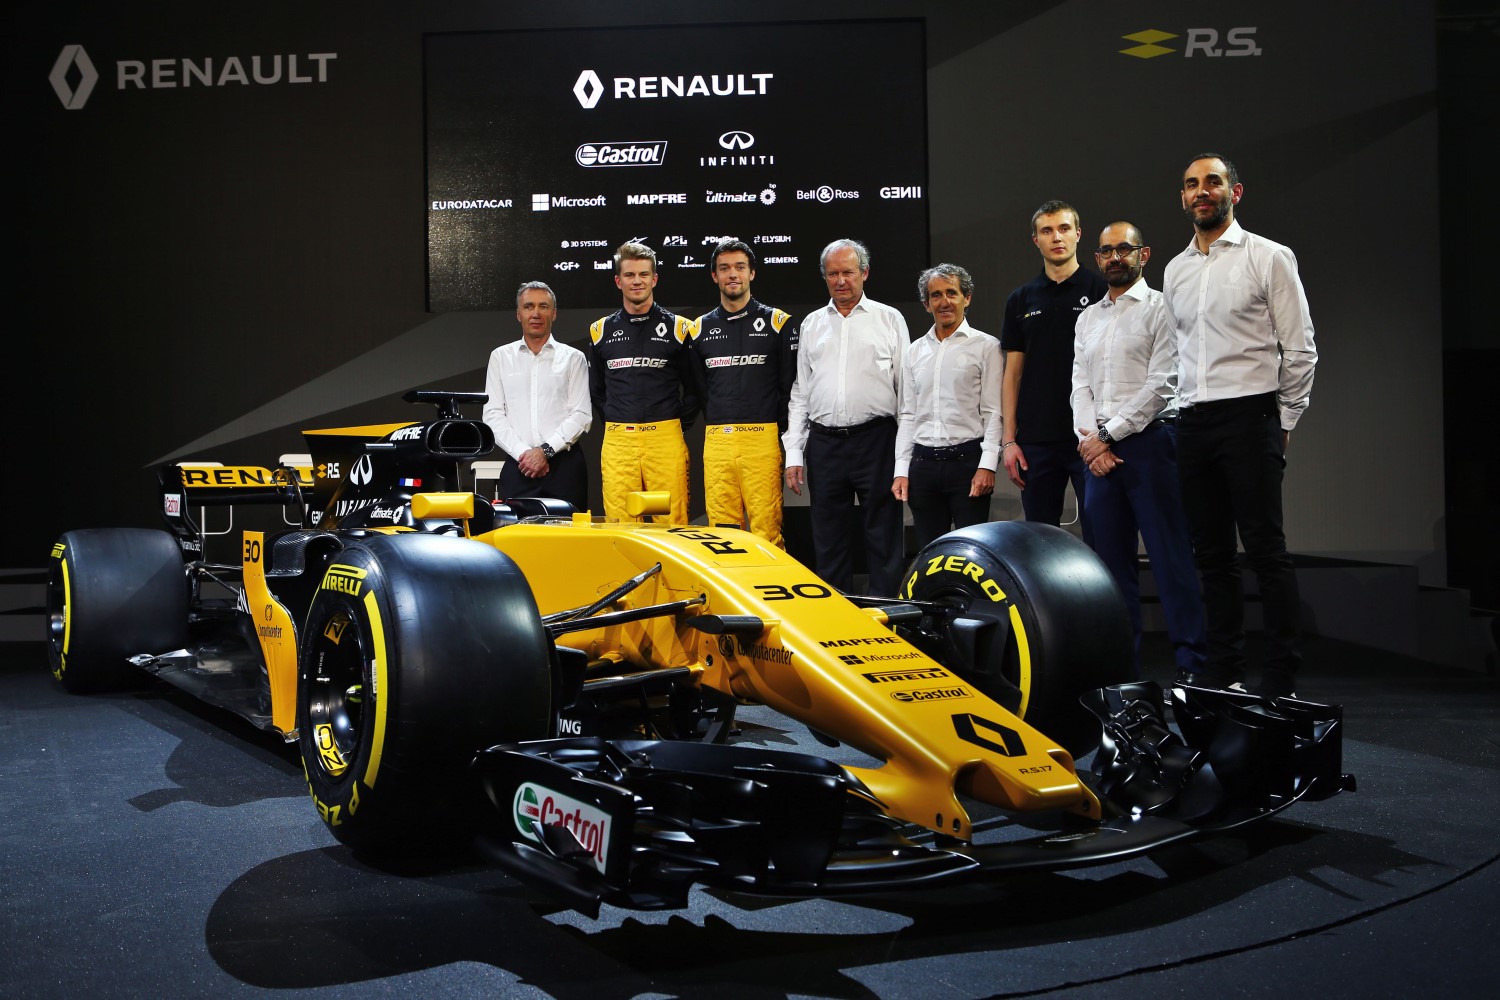 Renault's 2017 launch